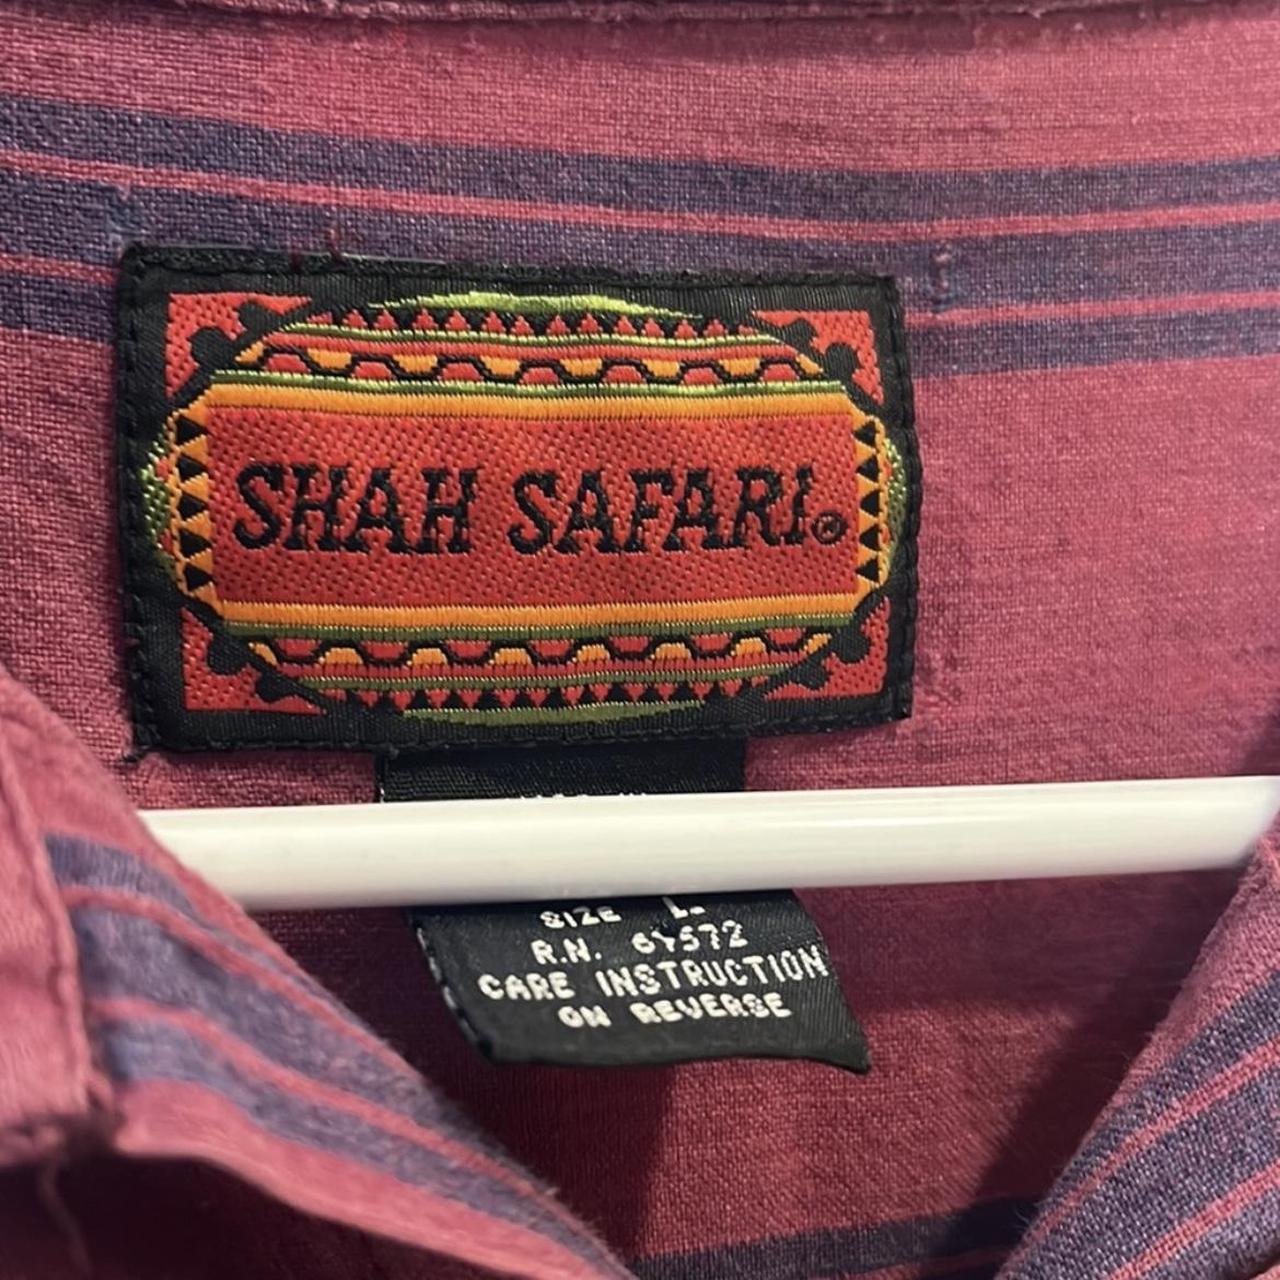 shah safari shirt